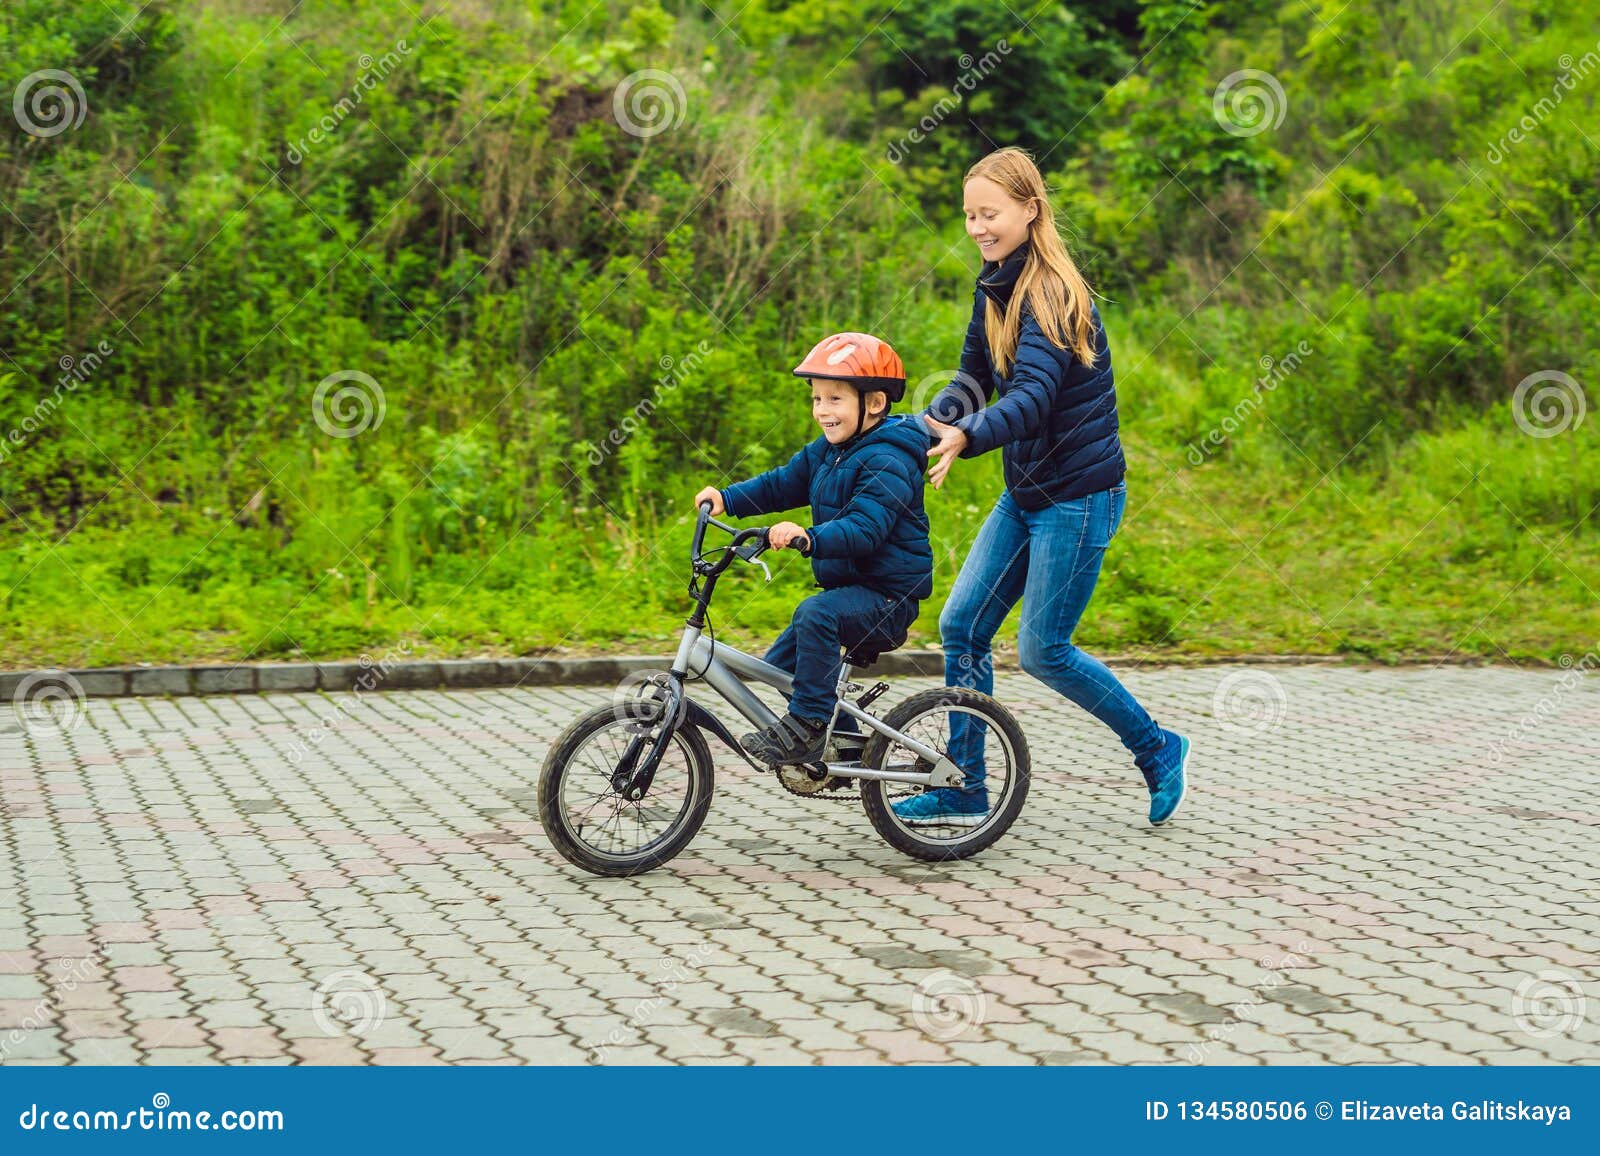 幸福的母亲教儿子骑自行车 库存照片. 图片 包括有 父项, 外面, 妈妈, 男朋友, 户外, 成人, 童年 - 226844348